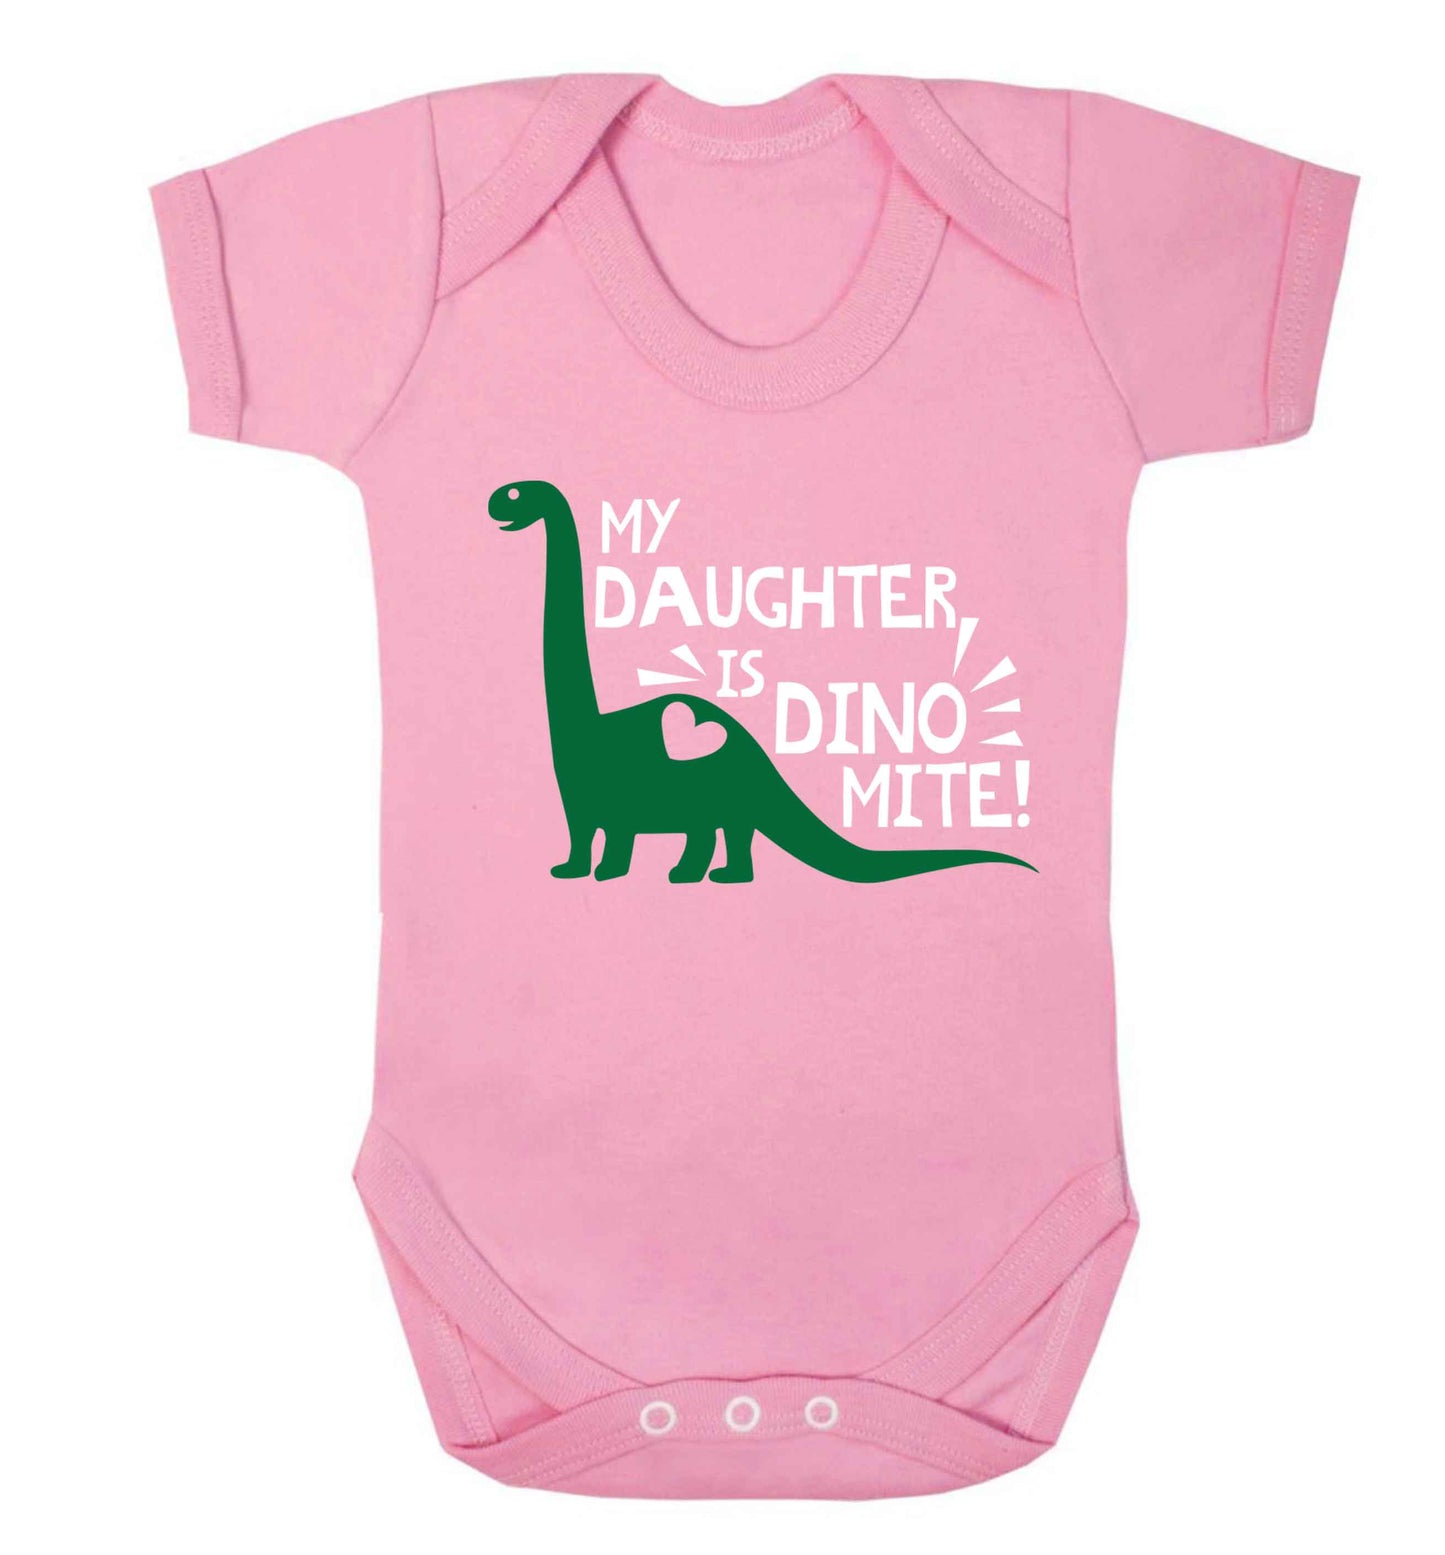 My daughter is dinomite! Baby Vest pale pink 18-24 months